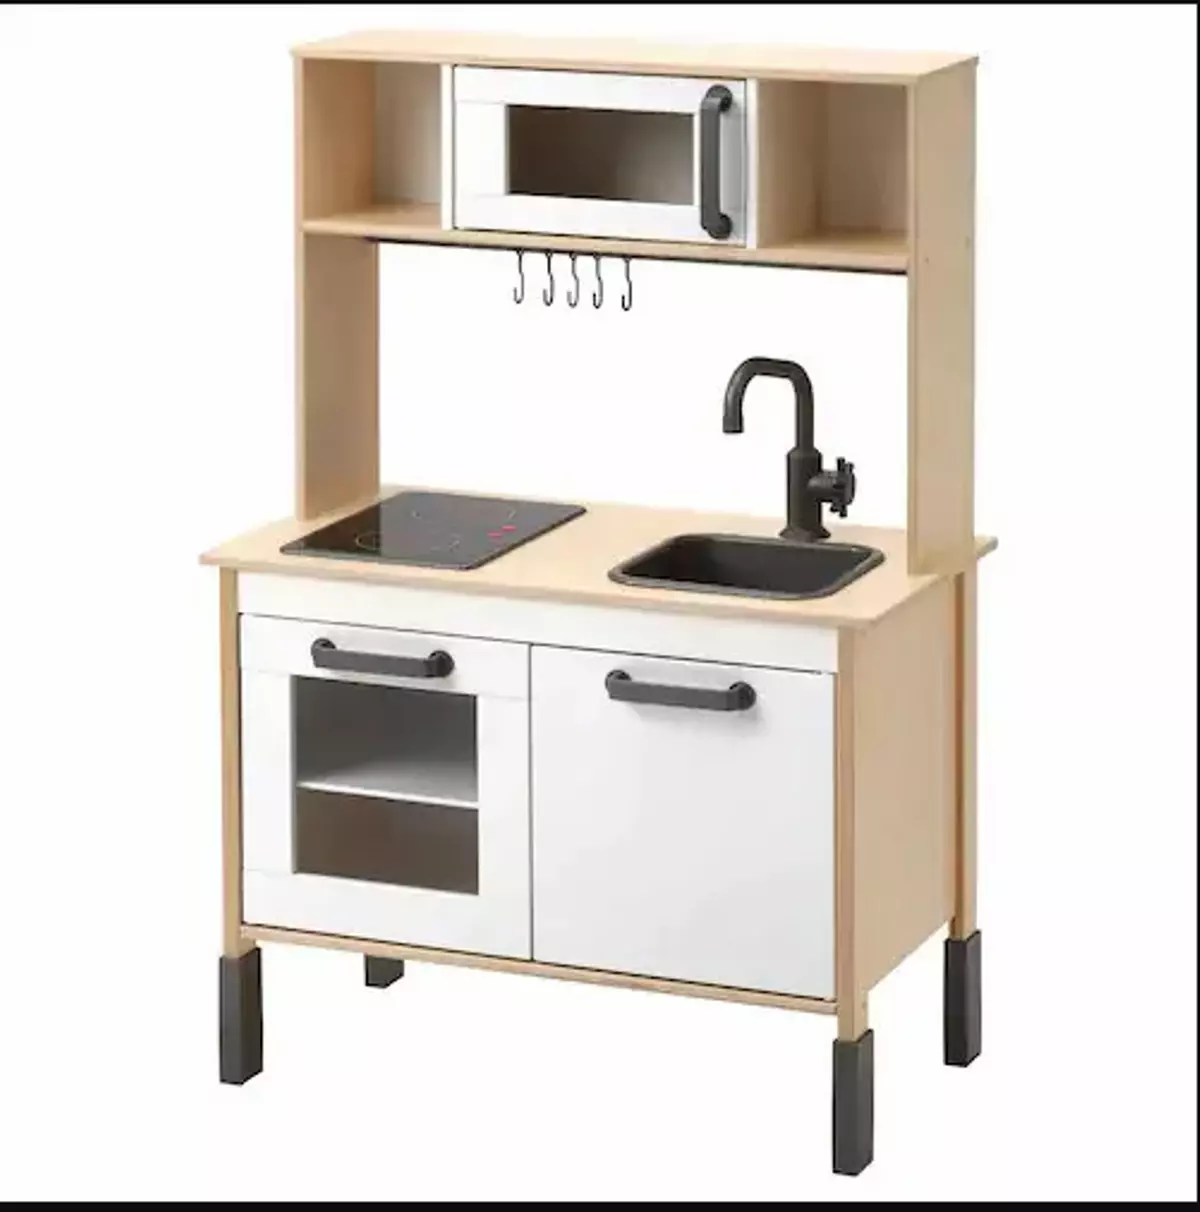 La mini cocina que triunfa en Ikea.